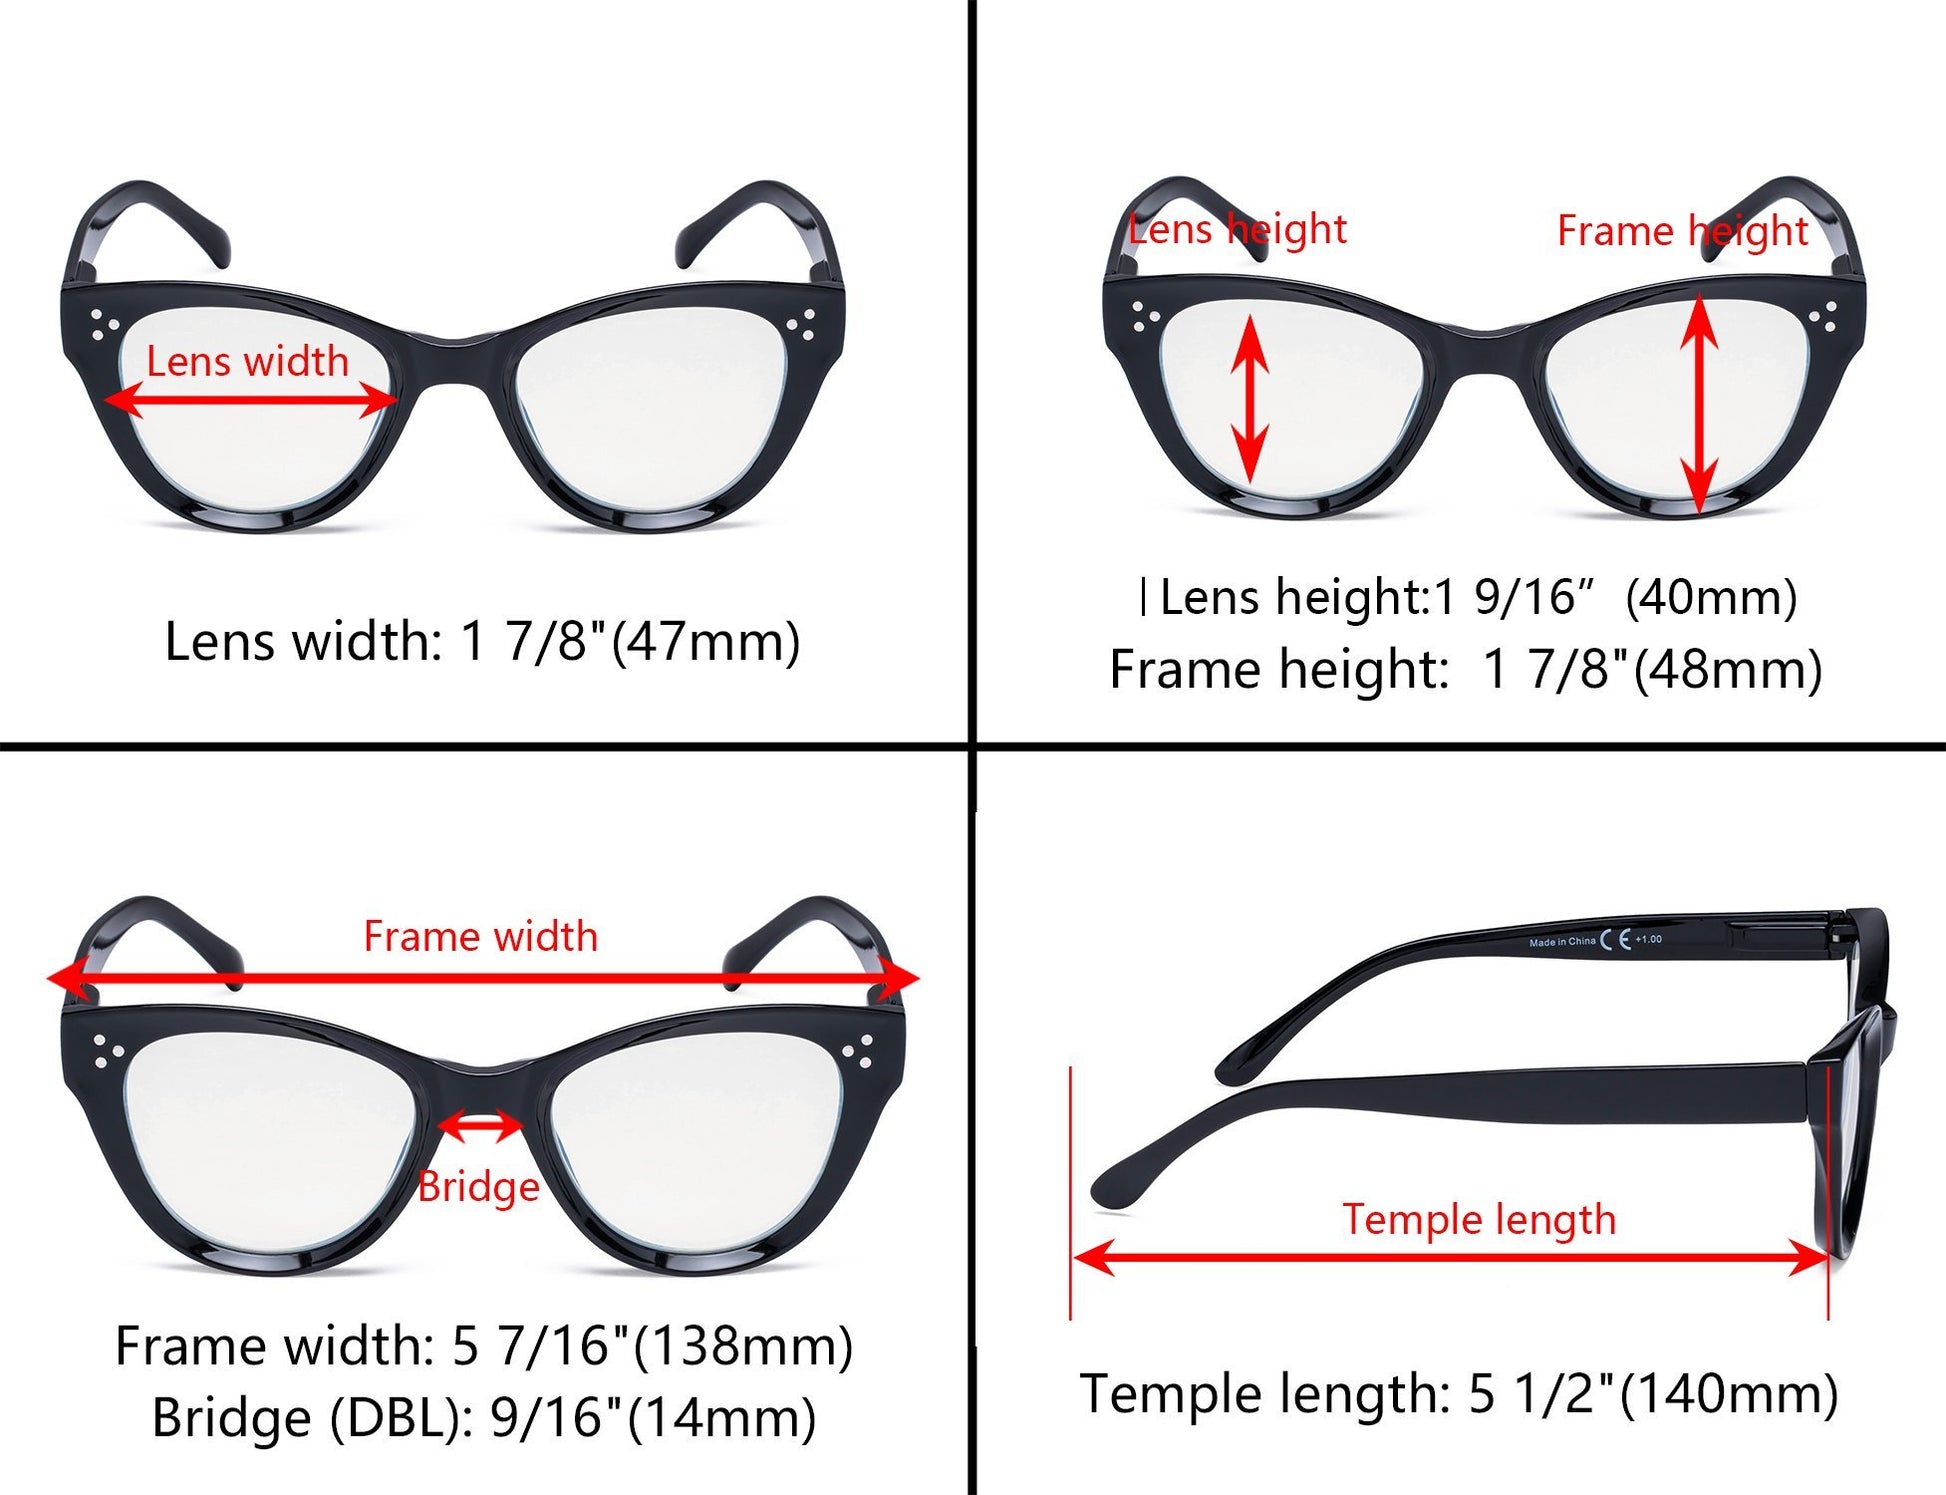 4 Pack Cat Eye Reading Glasses Thicker Frame Readers Women